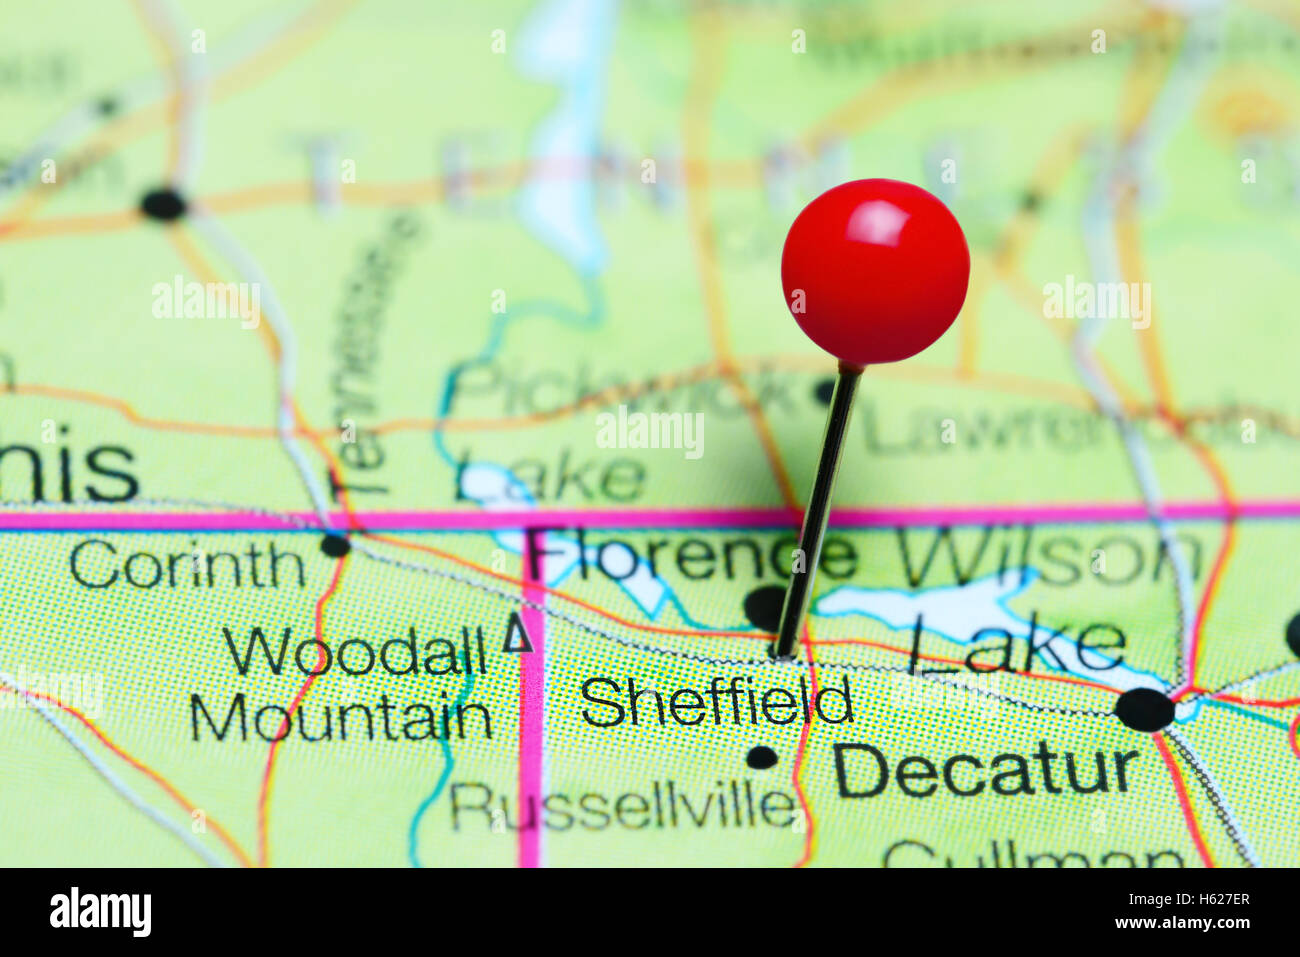 Sheffield pinned on a map of Alabama, USA Stock Photo